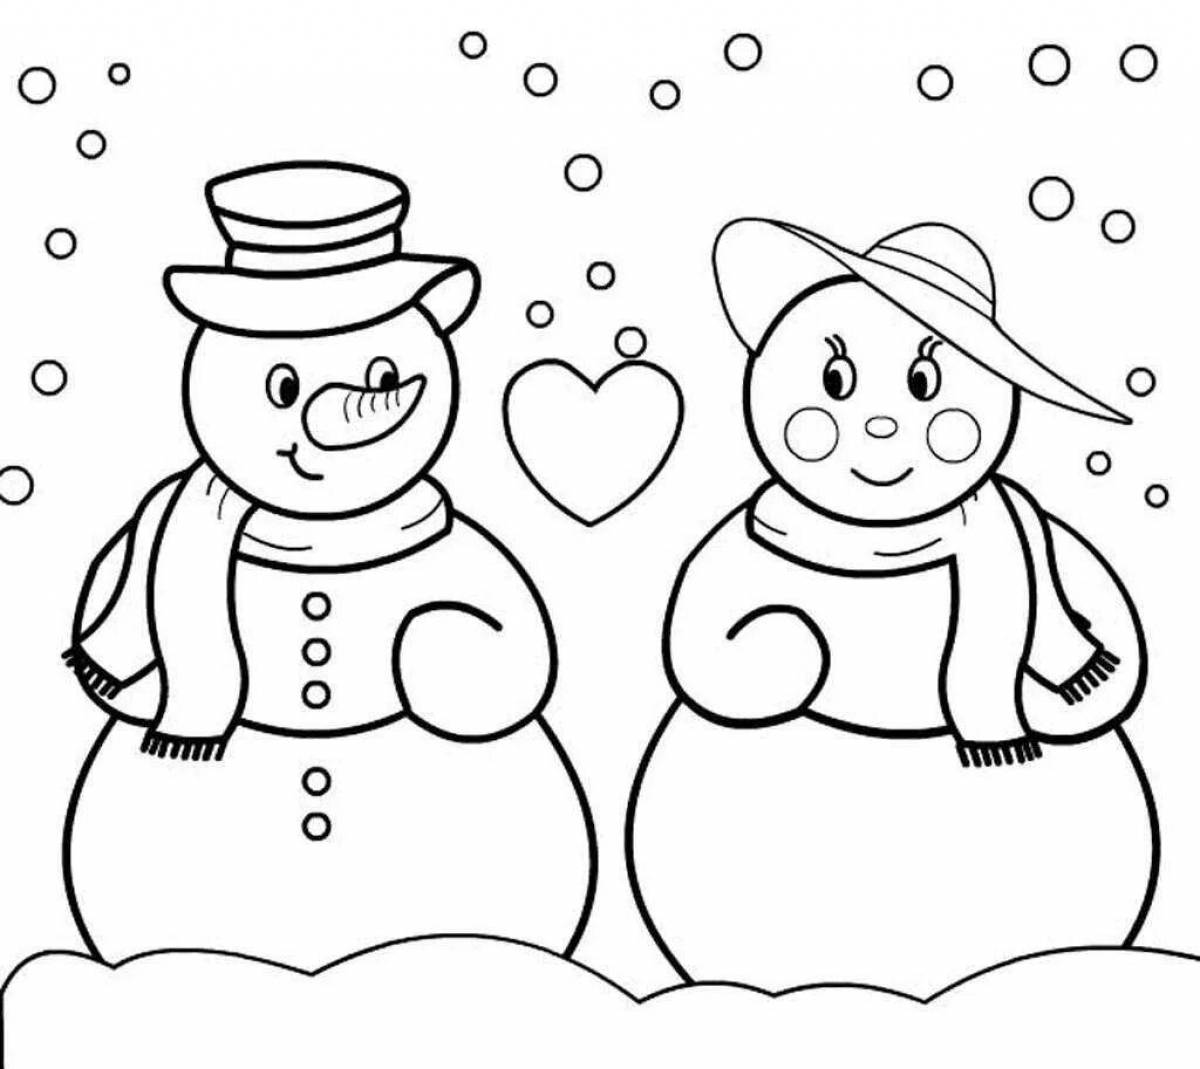 Волшебный рисунок снеговика для детей